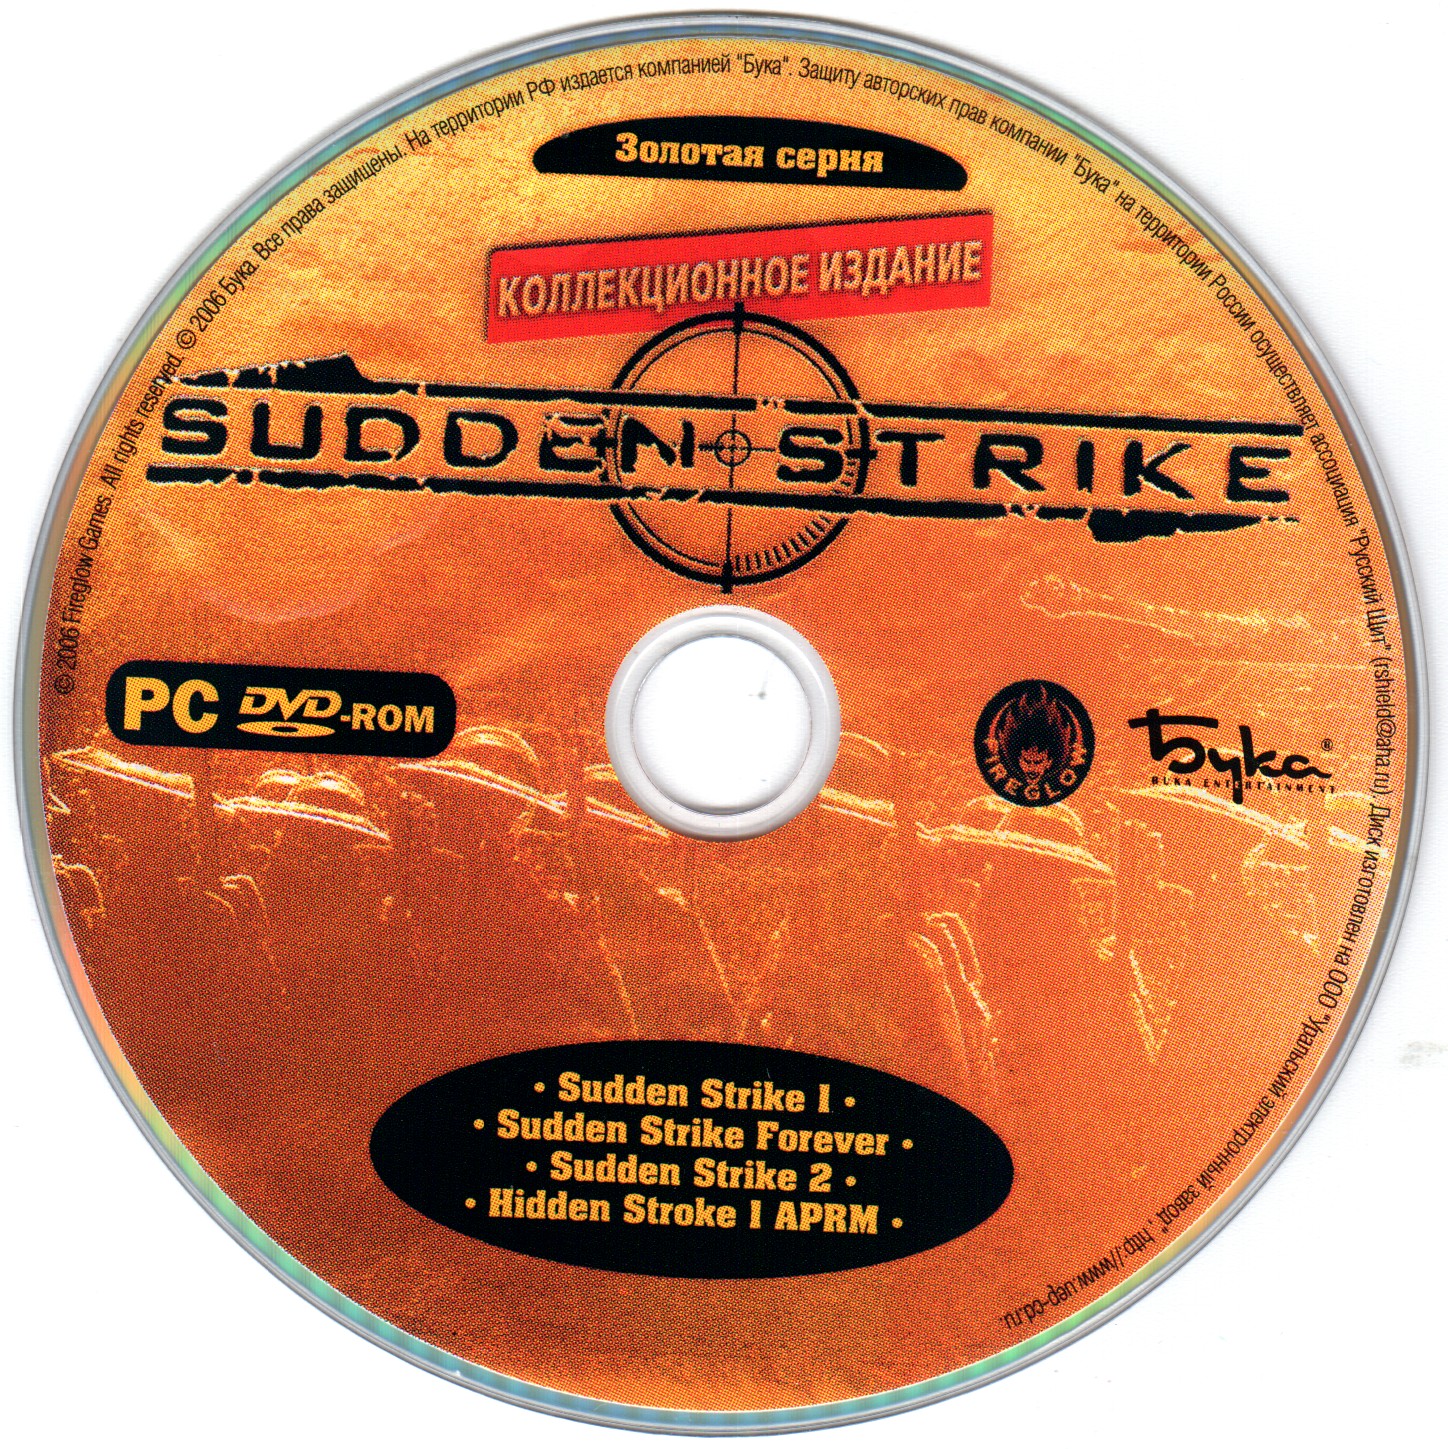 Антология секретного клуба. Sudden Strike коллекционное издание. Sudden Strike 4 коллекционное издание. Компьютерные игры диски бука.